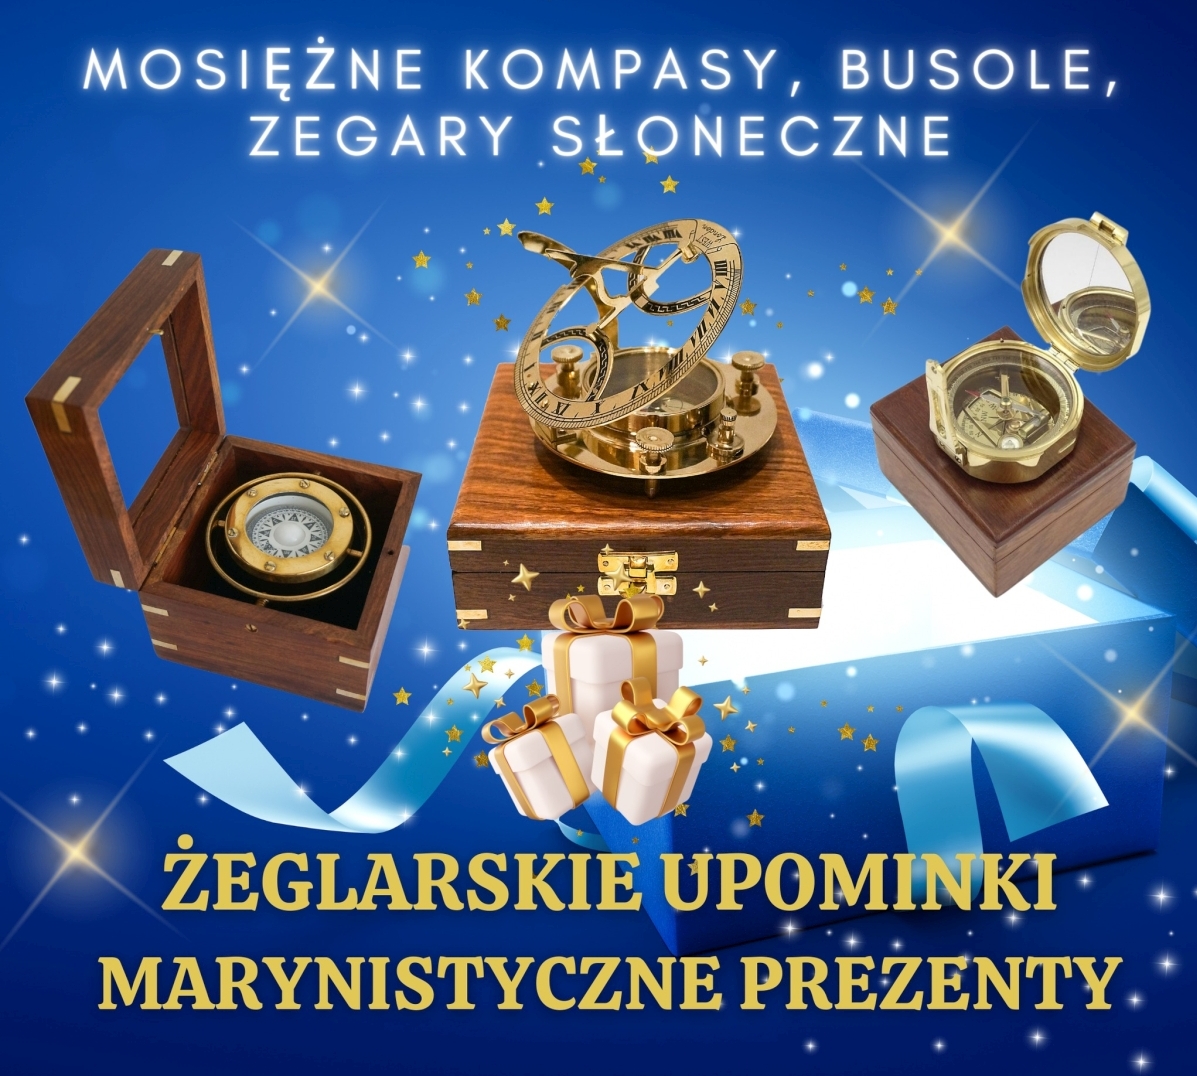 Żeglarski Zegar Słoneczny Dollonda z Kompasem z mosiądzu, Mosiężna Busola Żeglarska - Prezent dla Żeglarza i Ludzi Morza